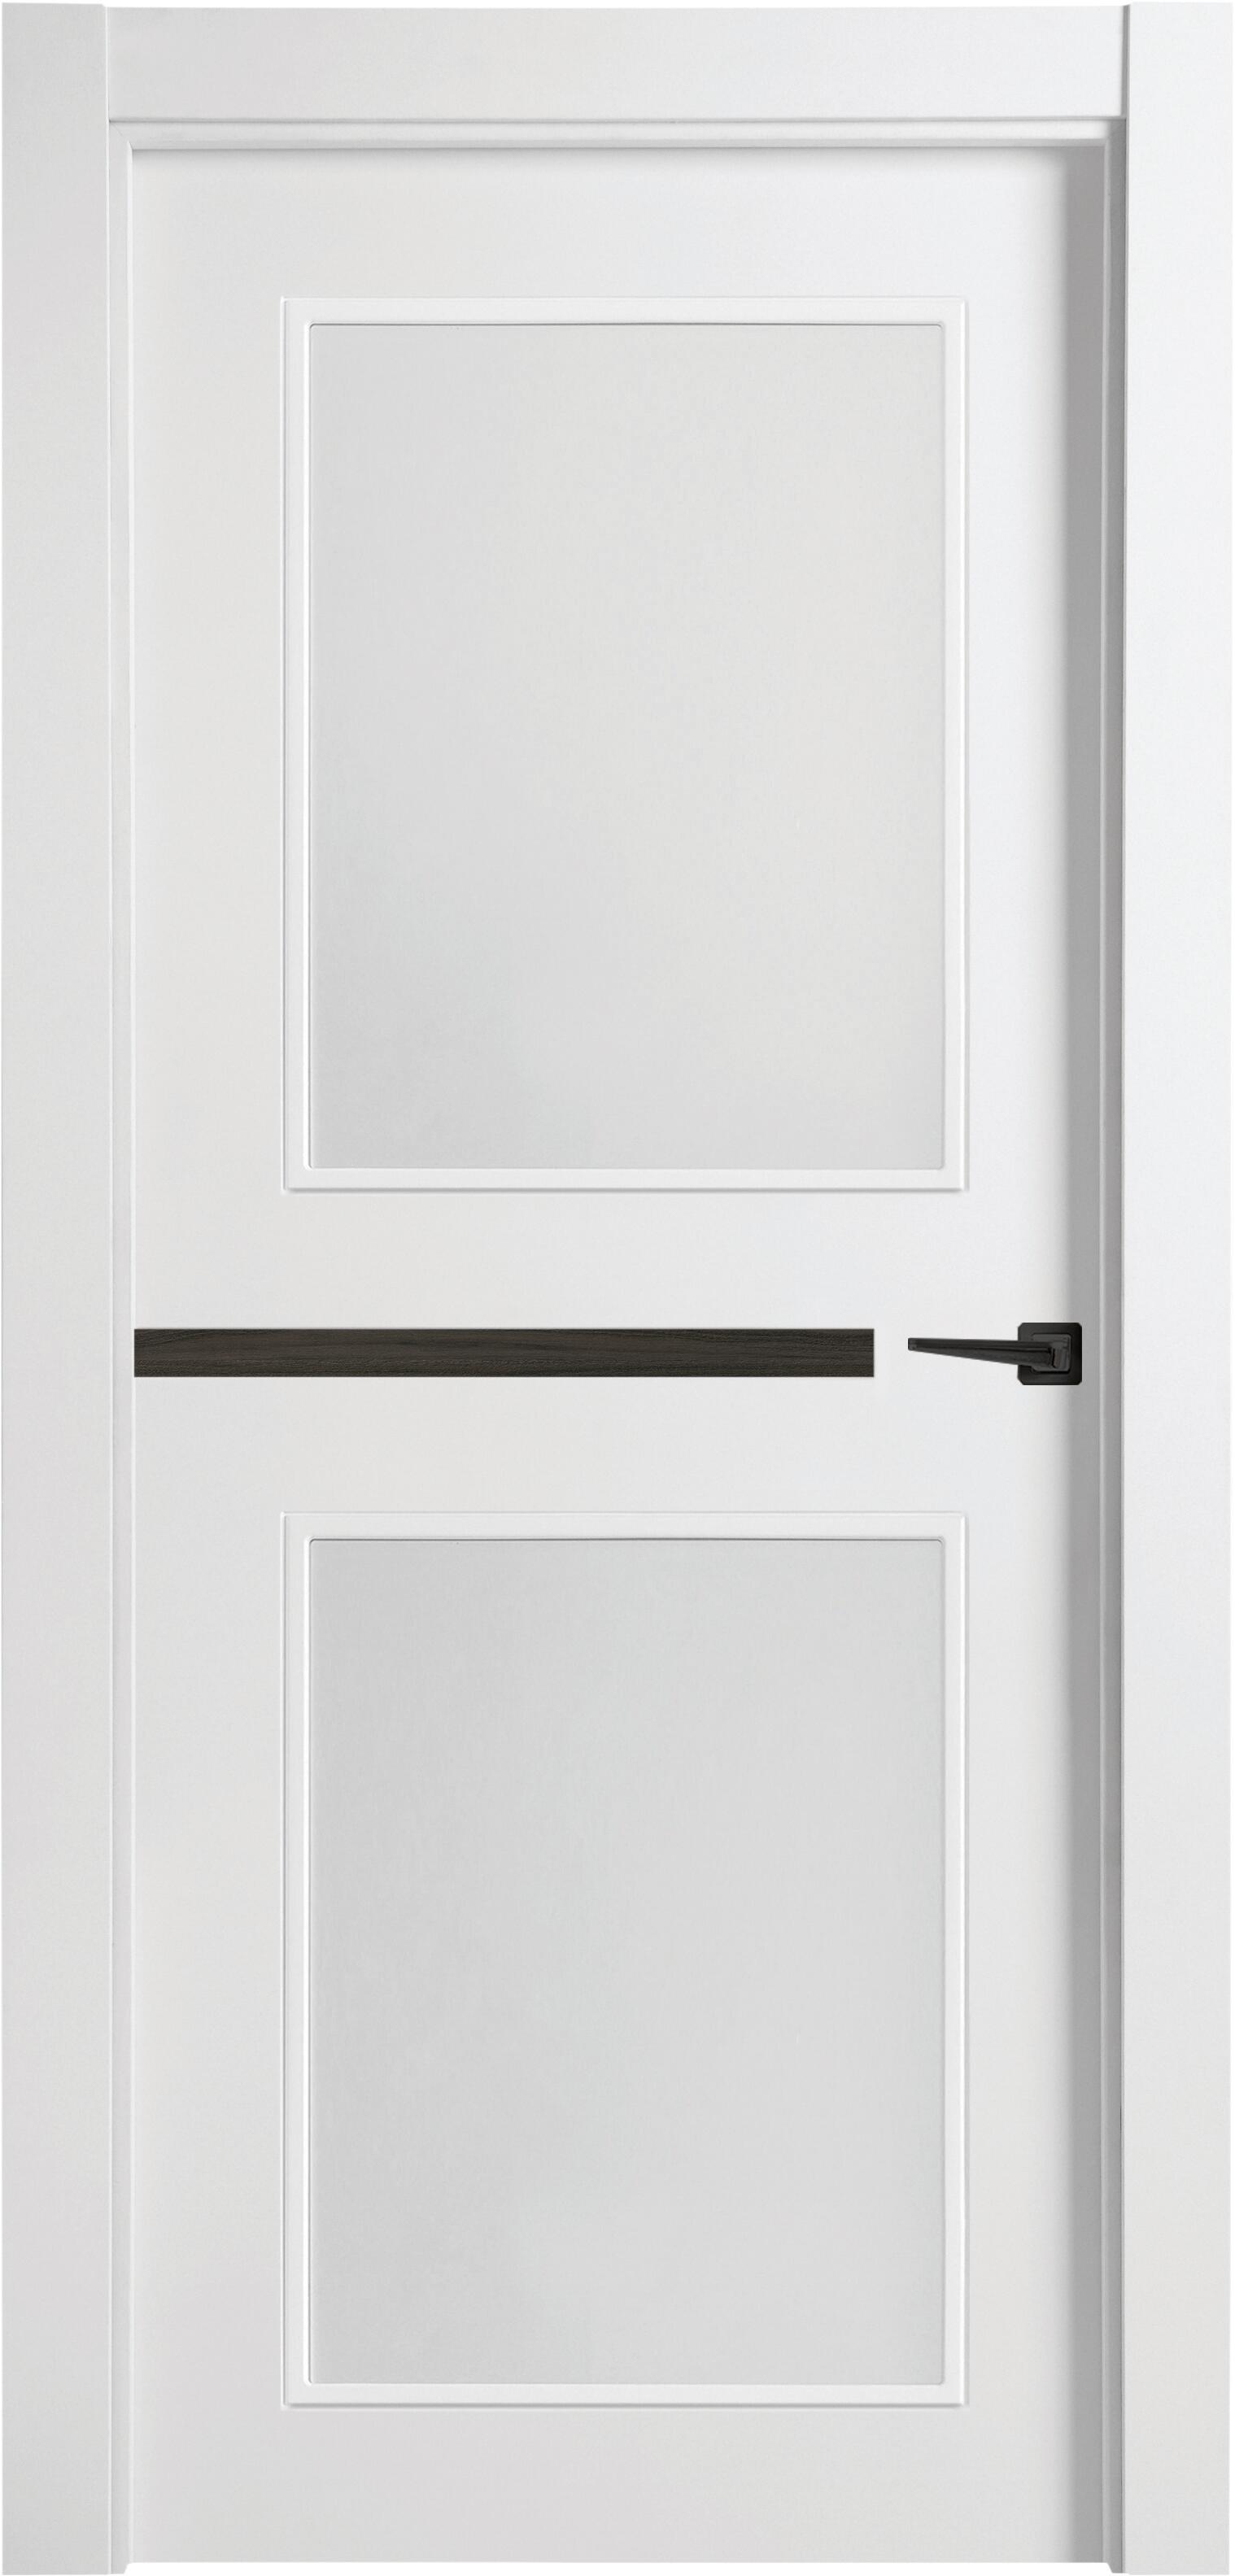 Puerta denver carbón blanco apertura izquierda con cristal de 9x82,5 cm